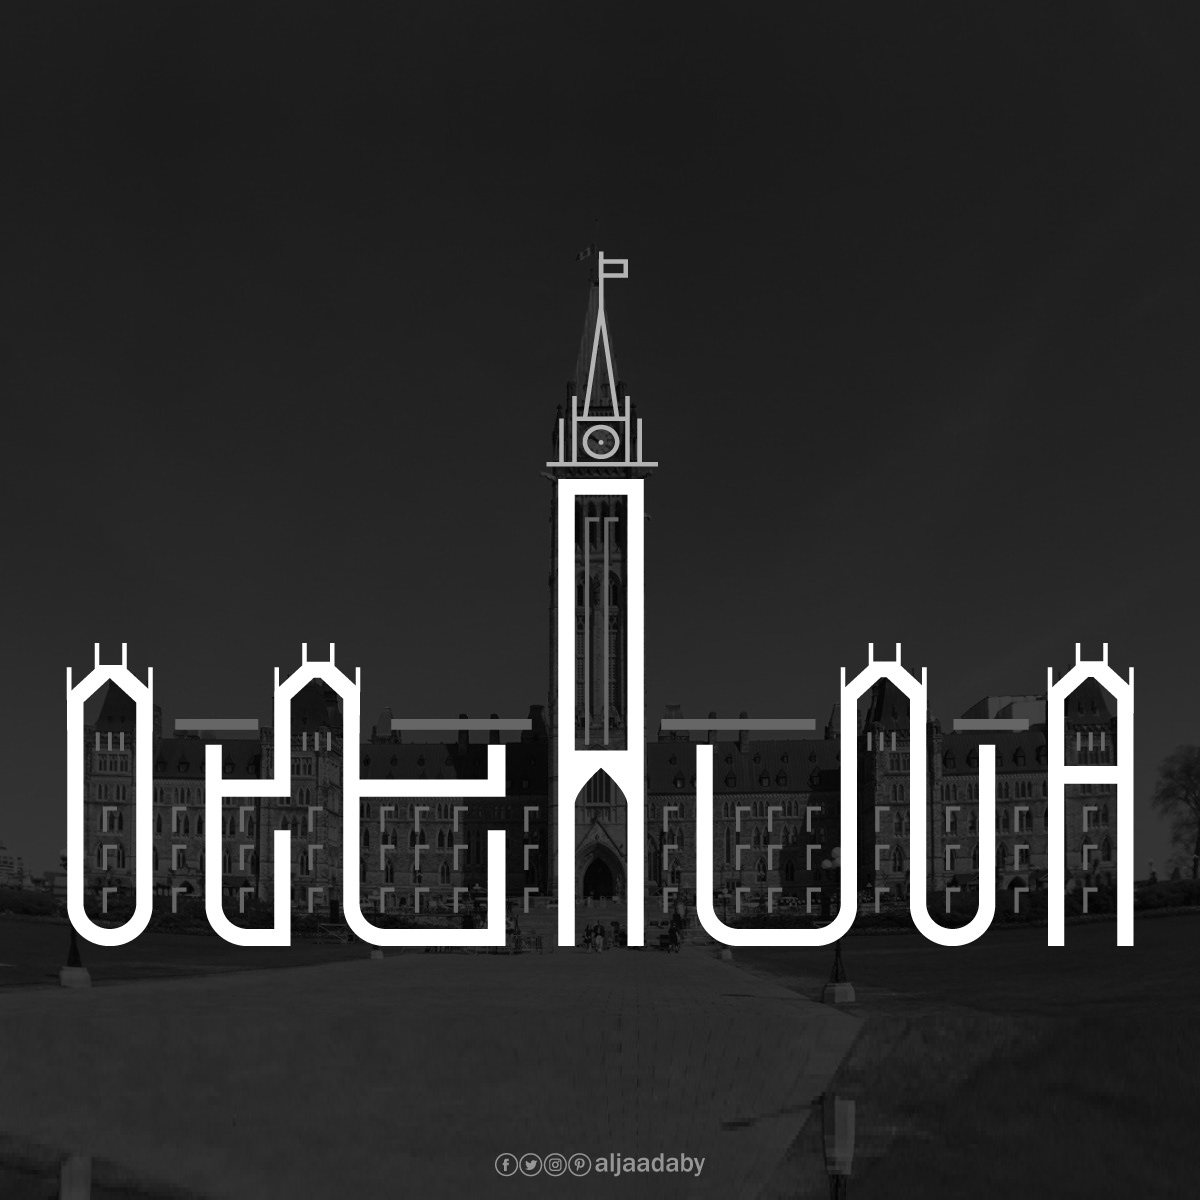 Typographic city logos based on their famous landmarks - Ottawa